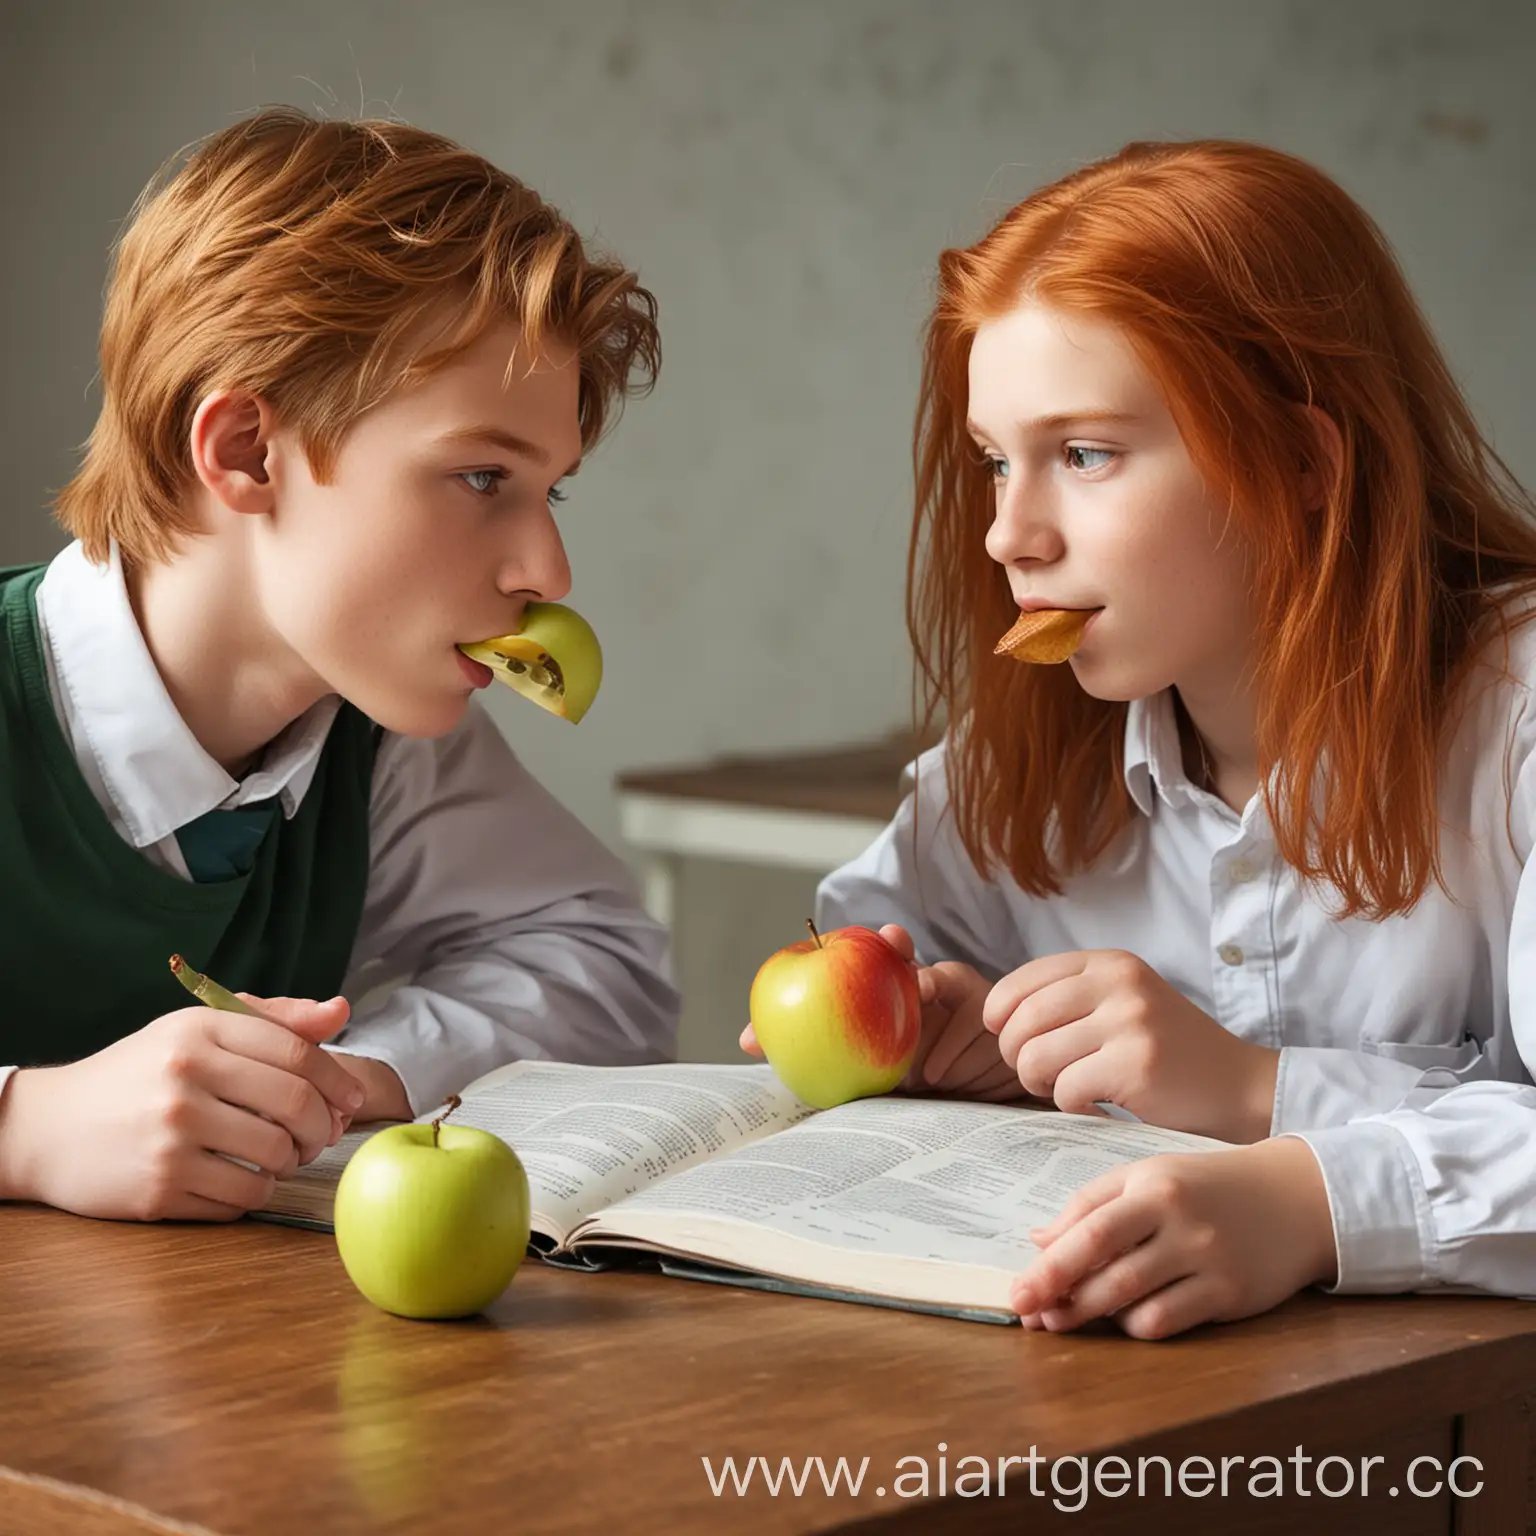 два подростка мальчика, один мальчик со светлыми волосами, другой рыжий с длинными волосами и  второй ест яблоко,  они вместе сидят за столом с учебником химии